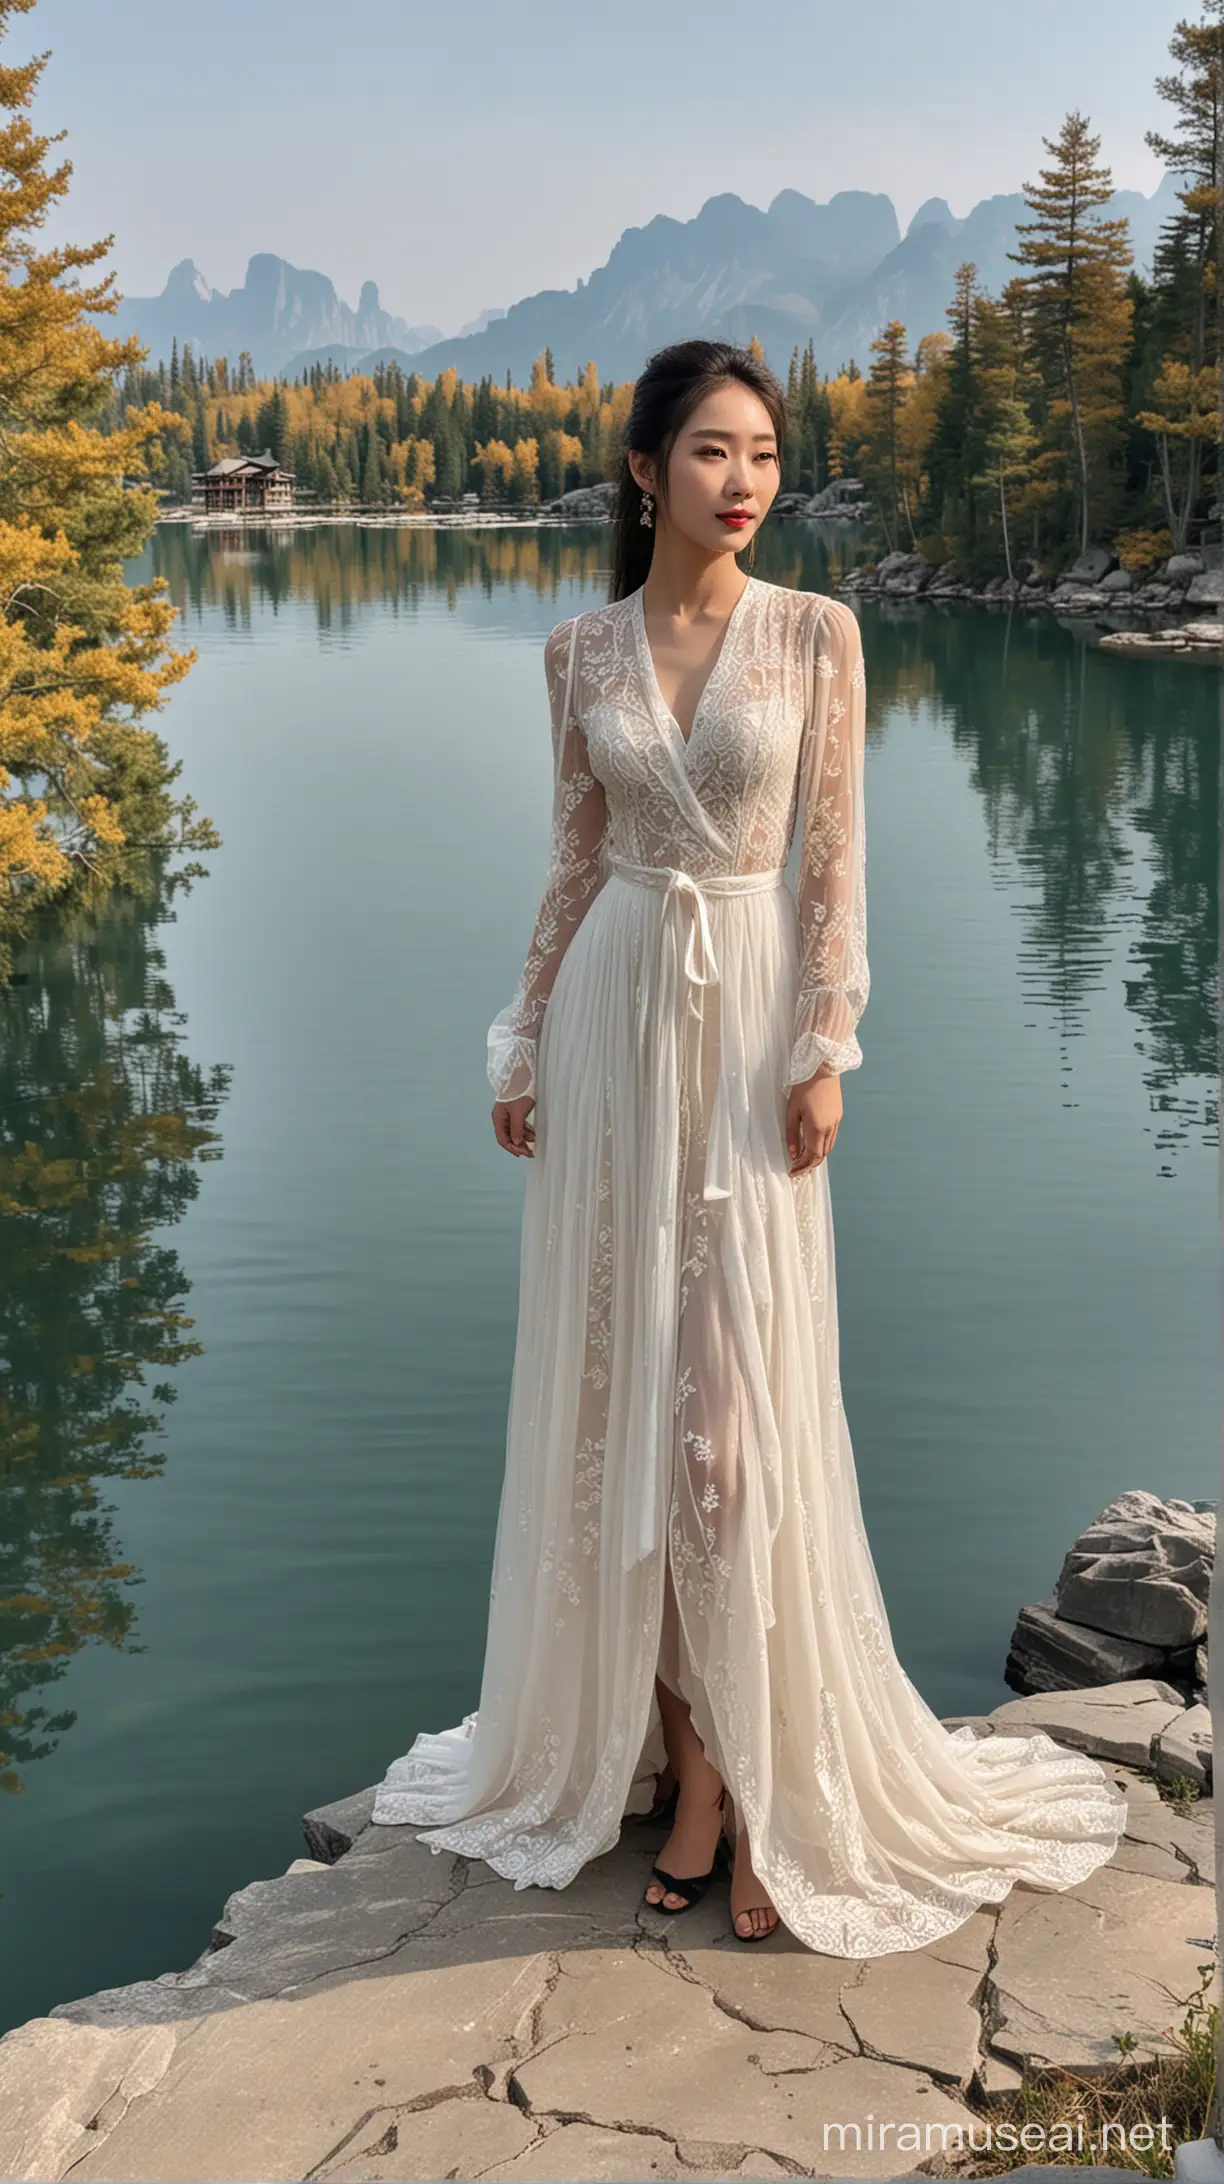 一位穿着时尚身材高挑漂亮的中国美女在千岛湖景点